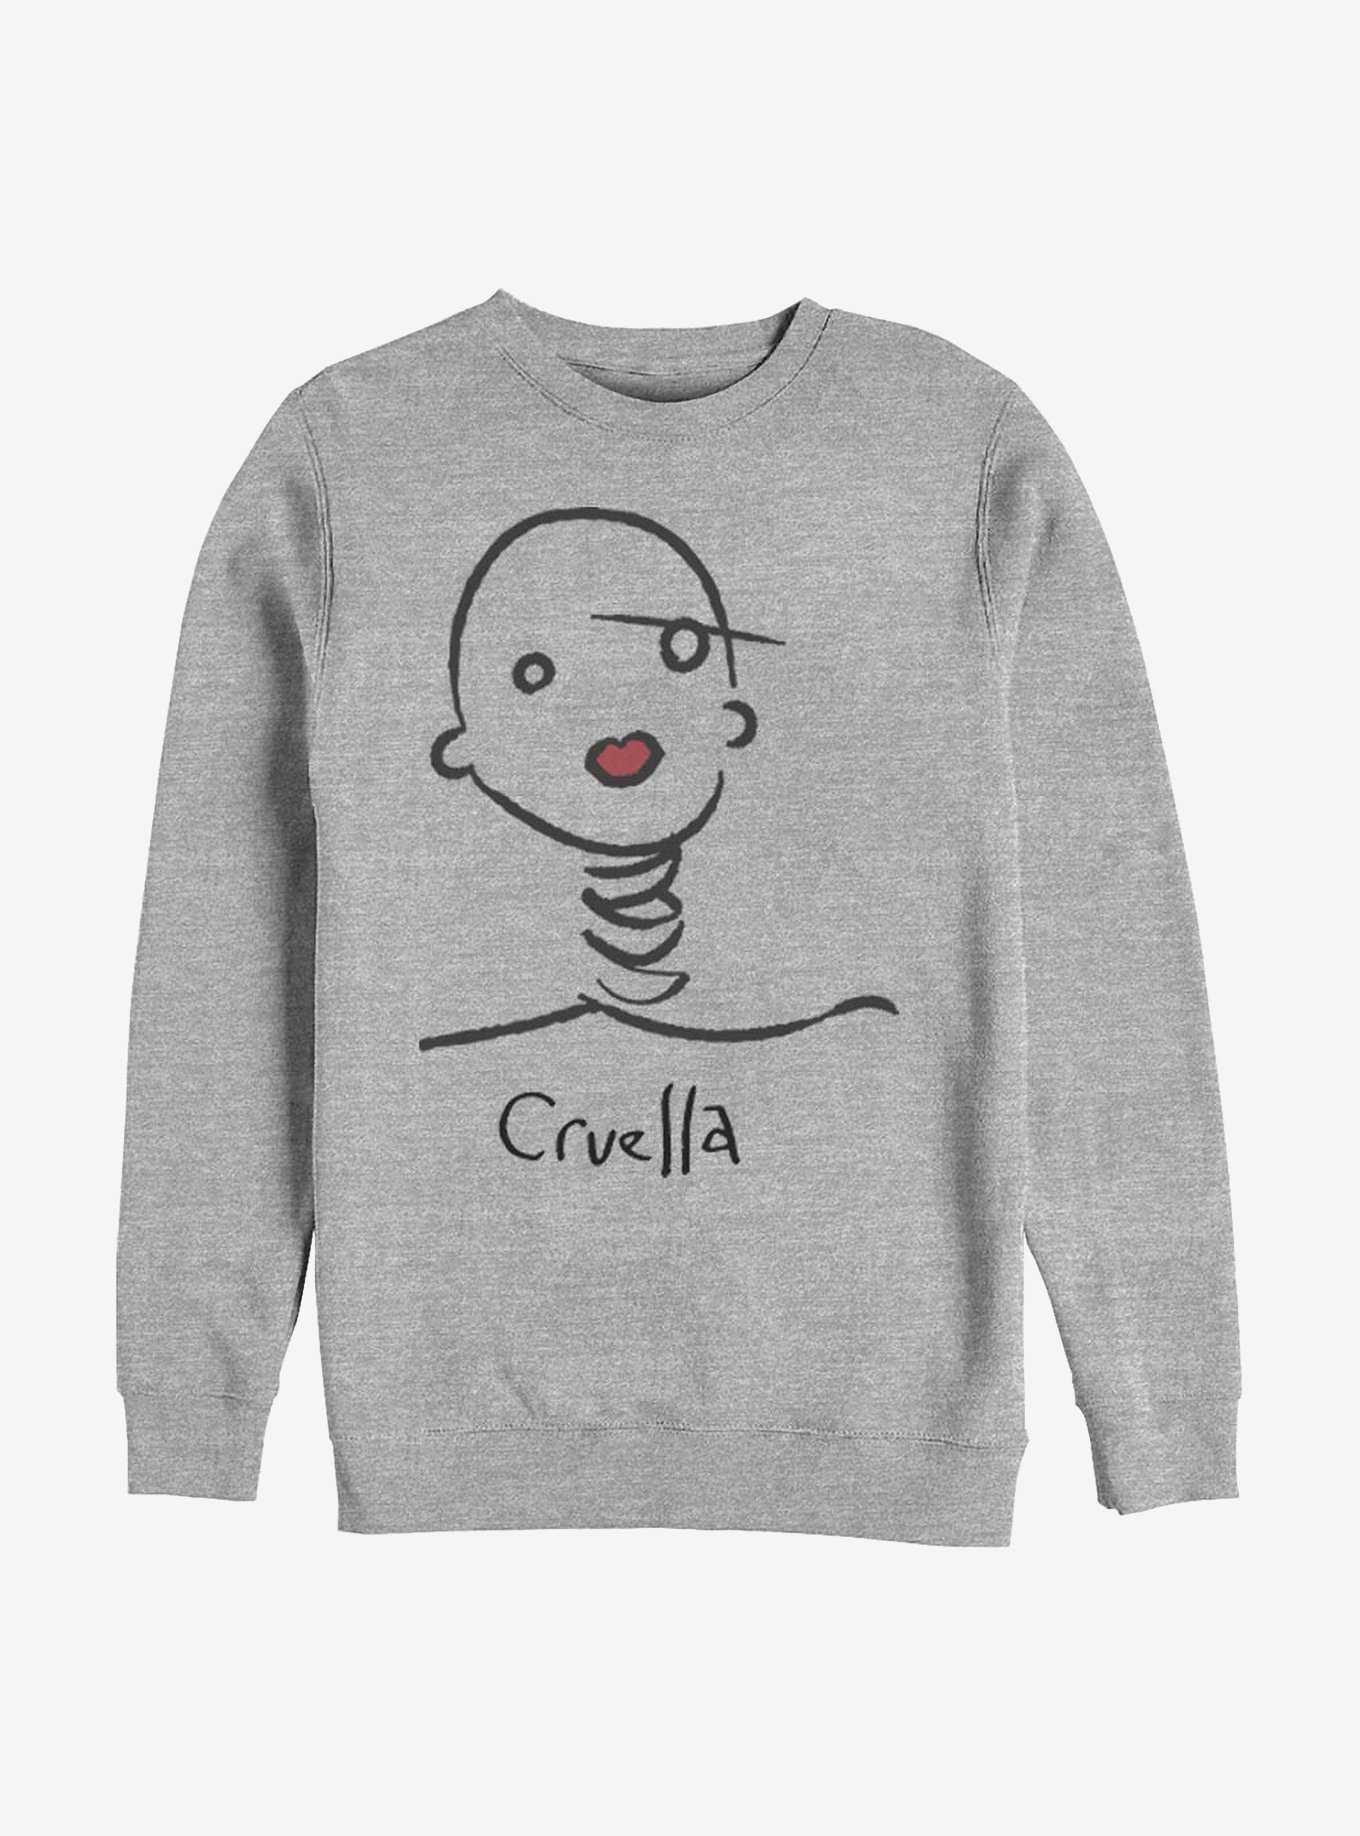 Disney Cruella Doodle Sweatshirt, , hi-res